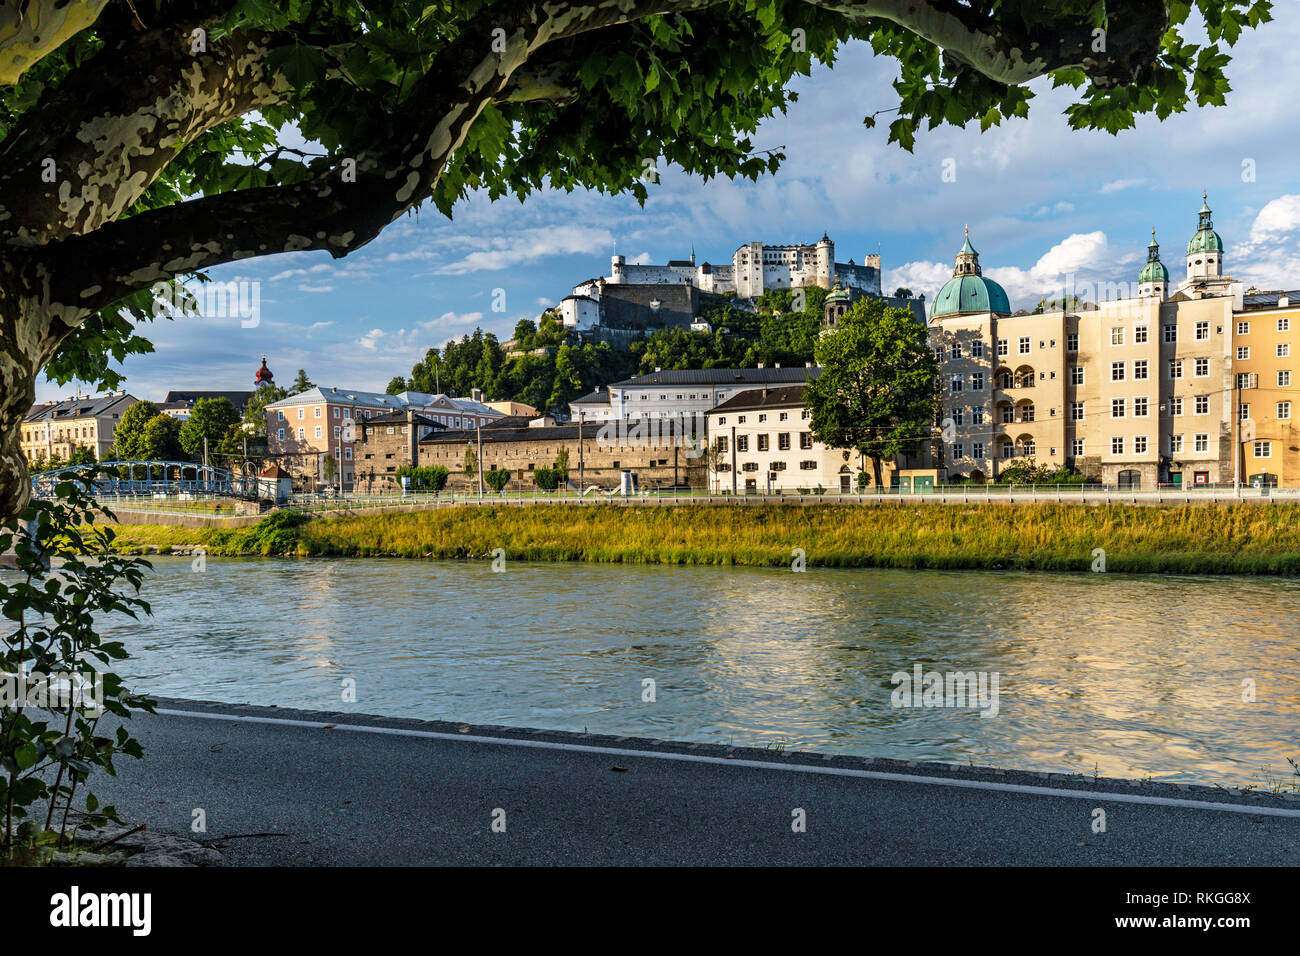 Vue sur la vieille ville de l'autre côté de la rivière Salzach avec la Cathédrale et la forteresse de Hohensalzburg, dans la distance, Salzbourg, Autriche. Banque D'Images